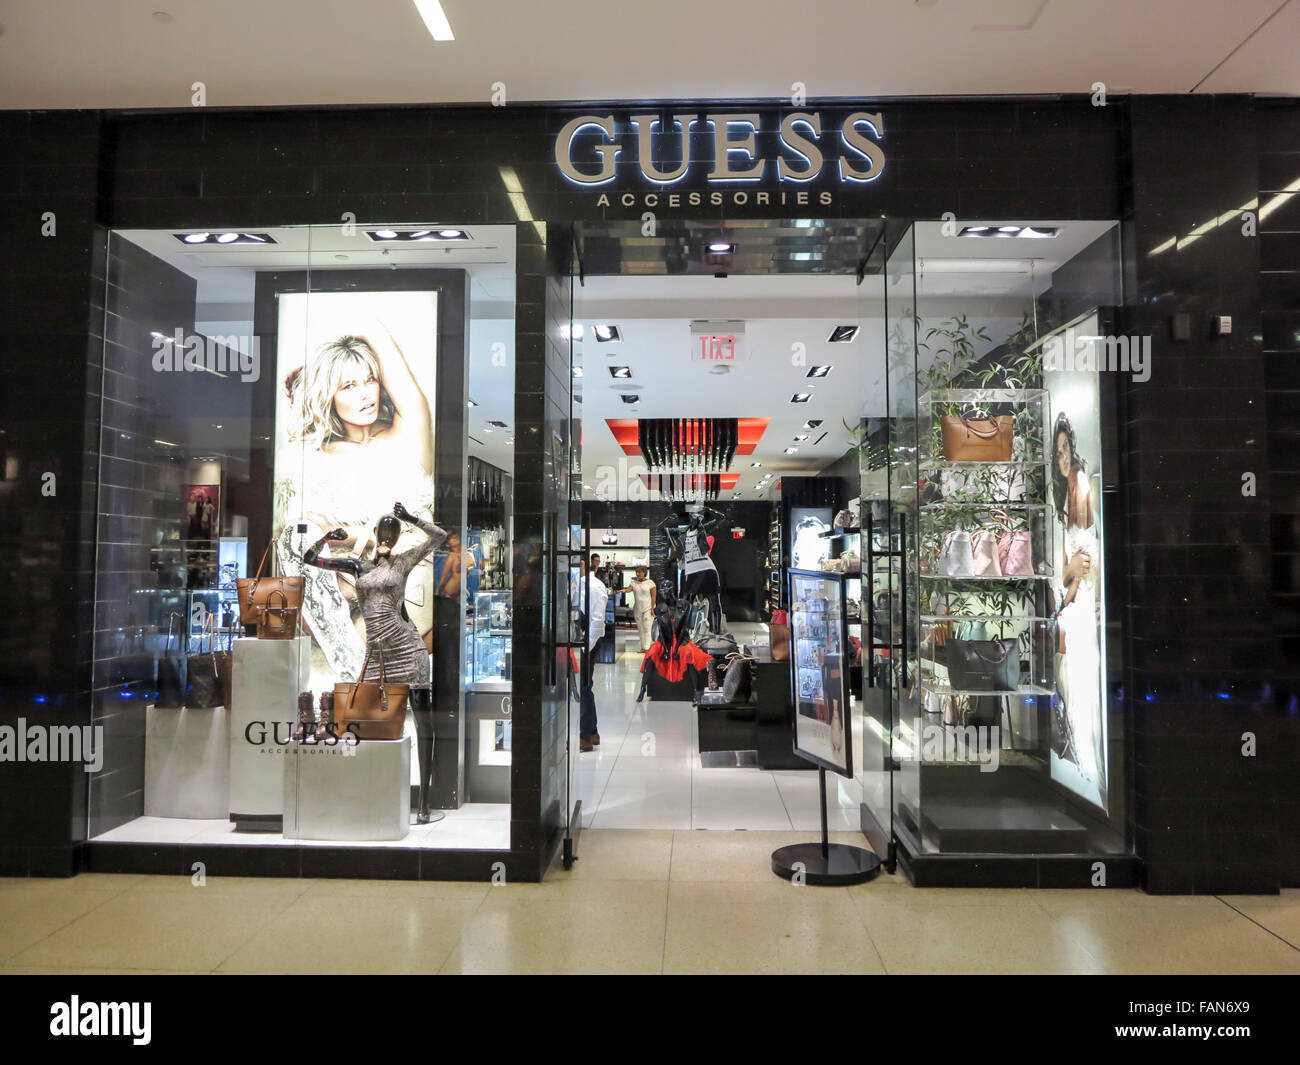 ALBERTA, Kanada - 23. September 2014: Guess Shop in Alberta, Kanada. Vermutung ist eine amerikanische gehobene Kleidung Linie Marke, die auch Stockfoto